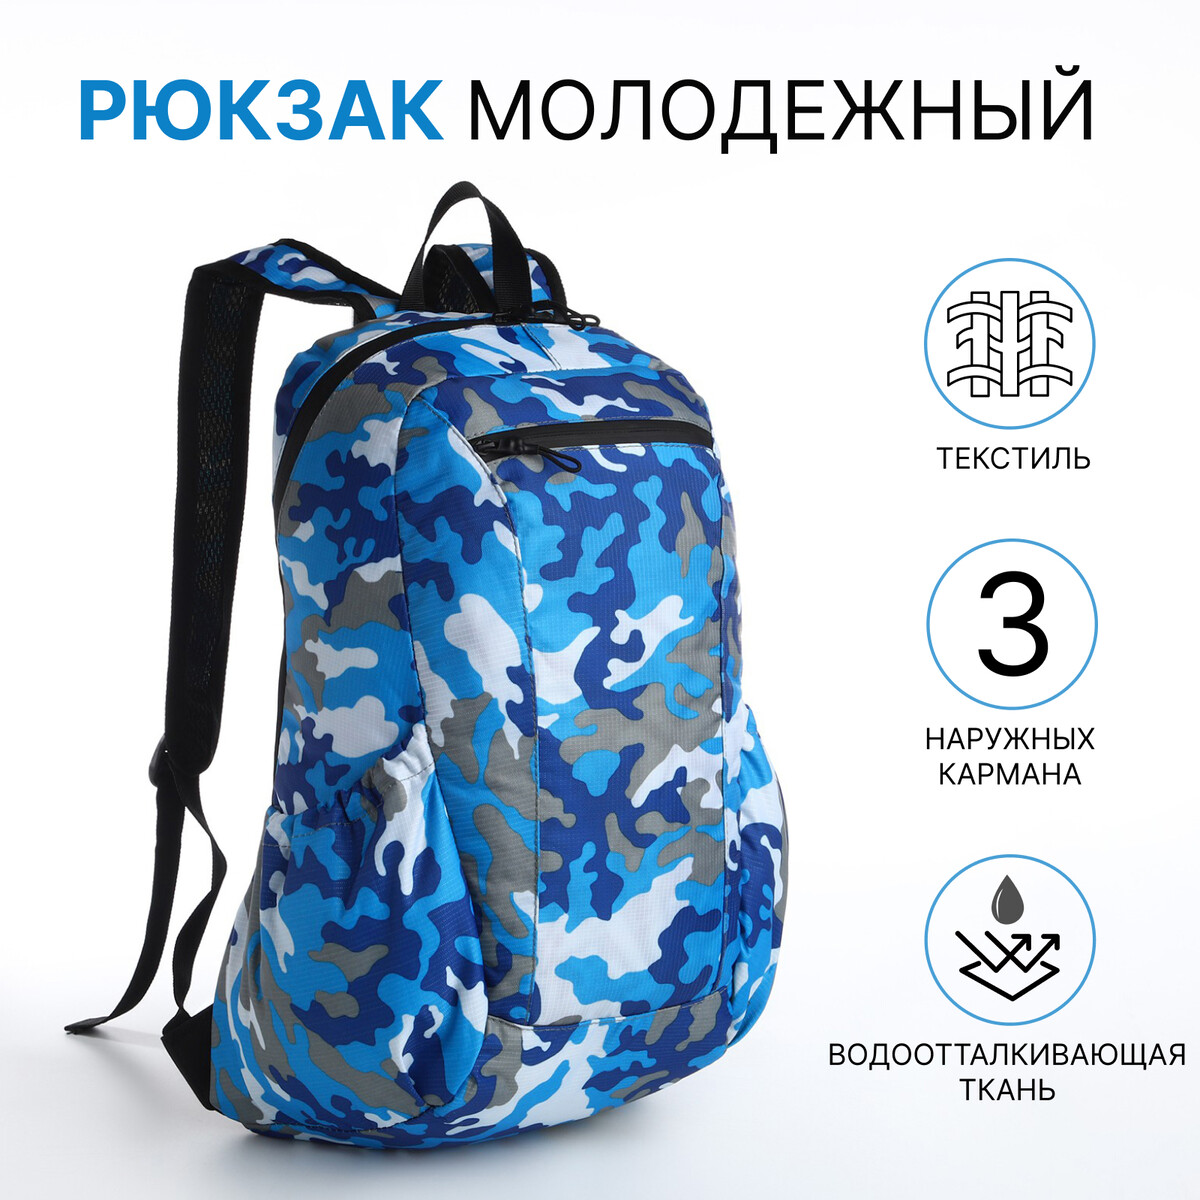 Рюкзак молодежный, водонепроницаемый на молнии, 3 кармана, цвет голубой/синий рюкзак молодежный из текстиля на молнии водонепроницаемый наружный карман бирюзовый